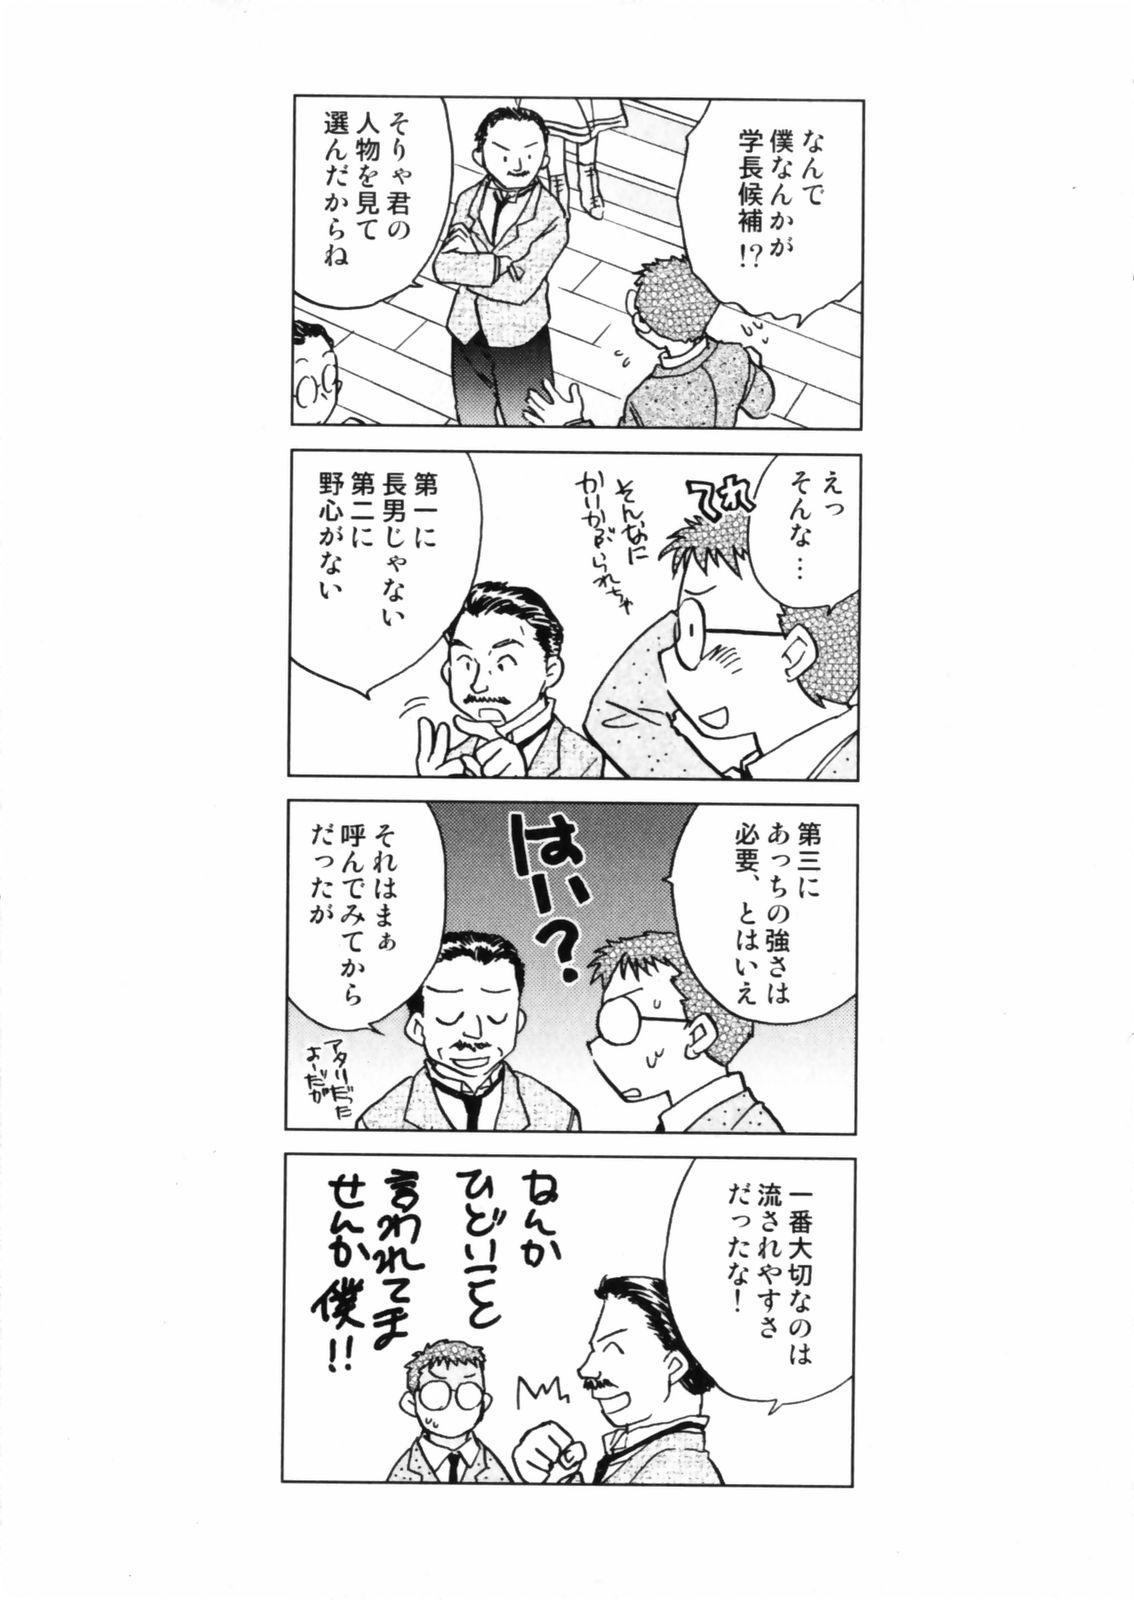 [Okano Ahiru] Hanasake ! Otome Juku (Otome Private Tutoring School) Vol.2 136